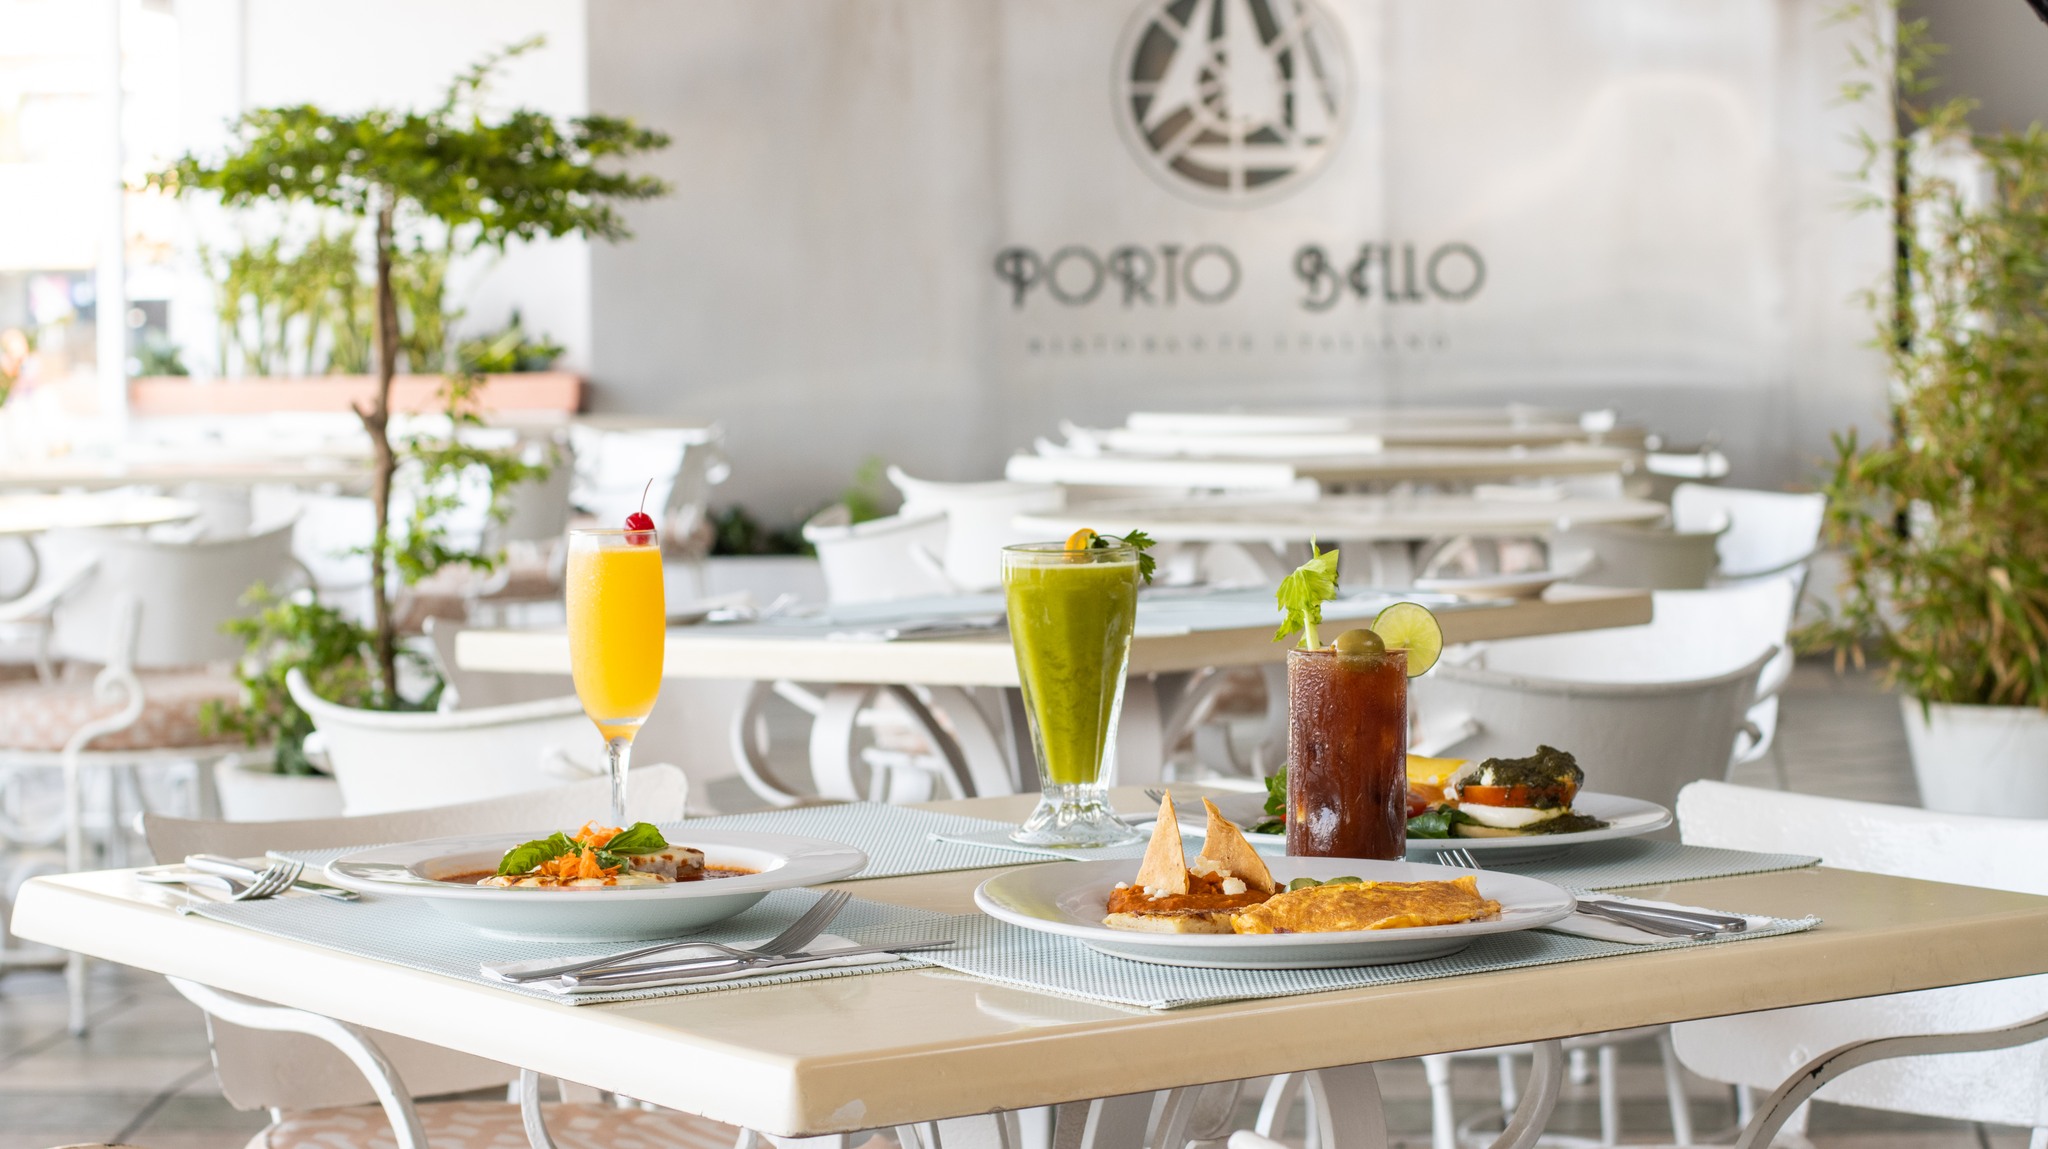 Porto Bello Bistro & Lounge